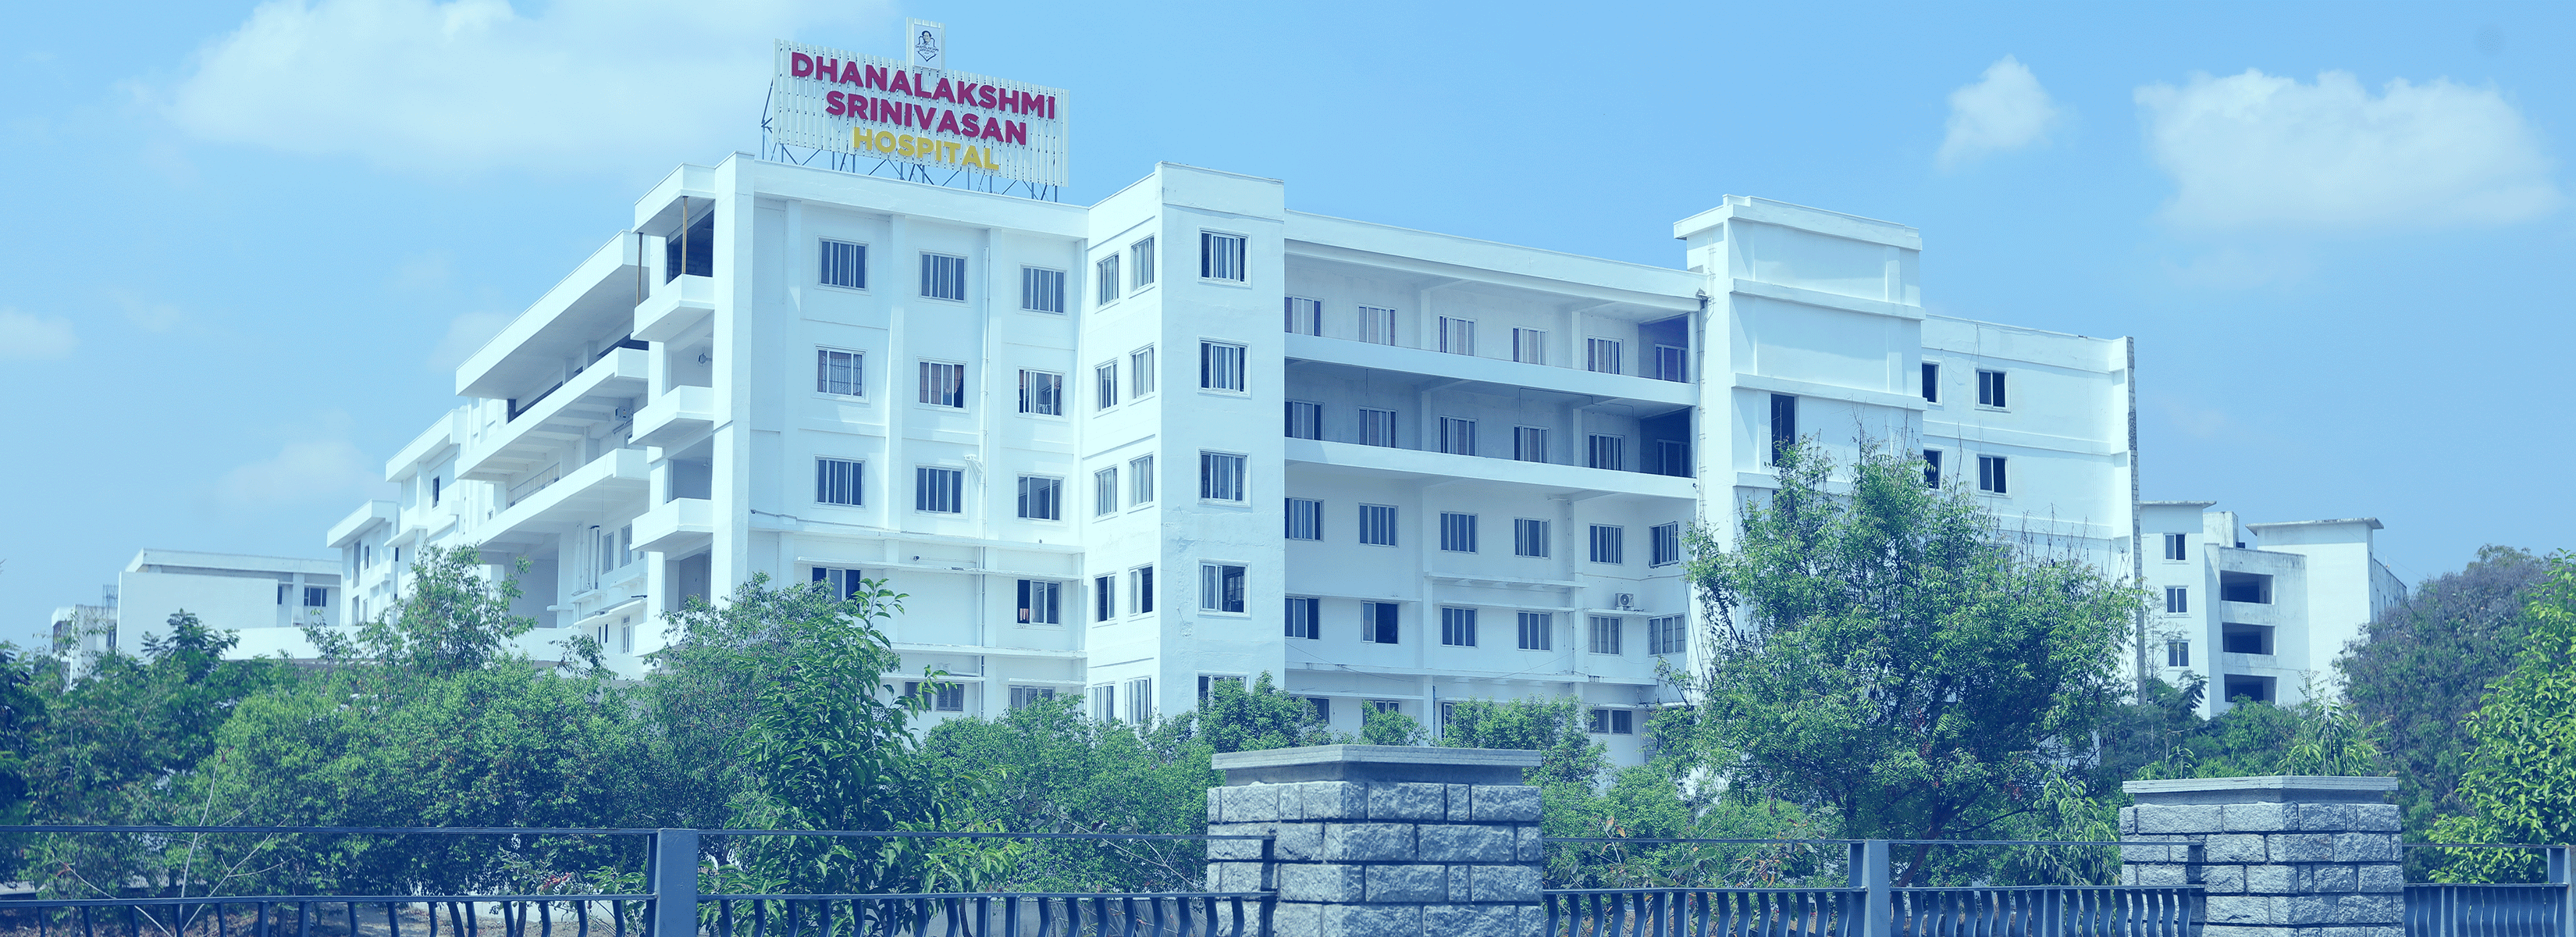 Dhanalakshmi_Srinivasan_Hospital_Building